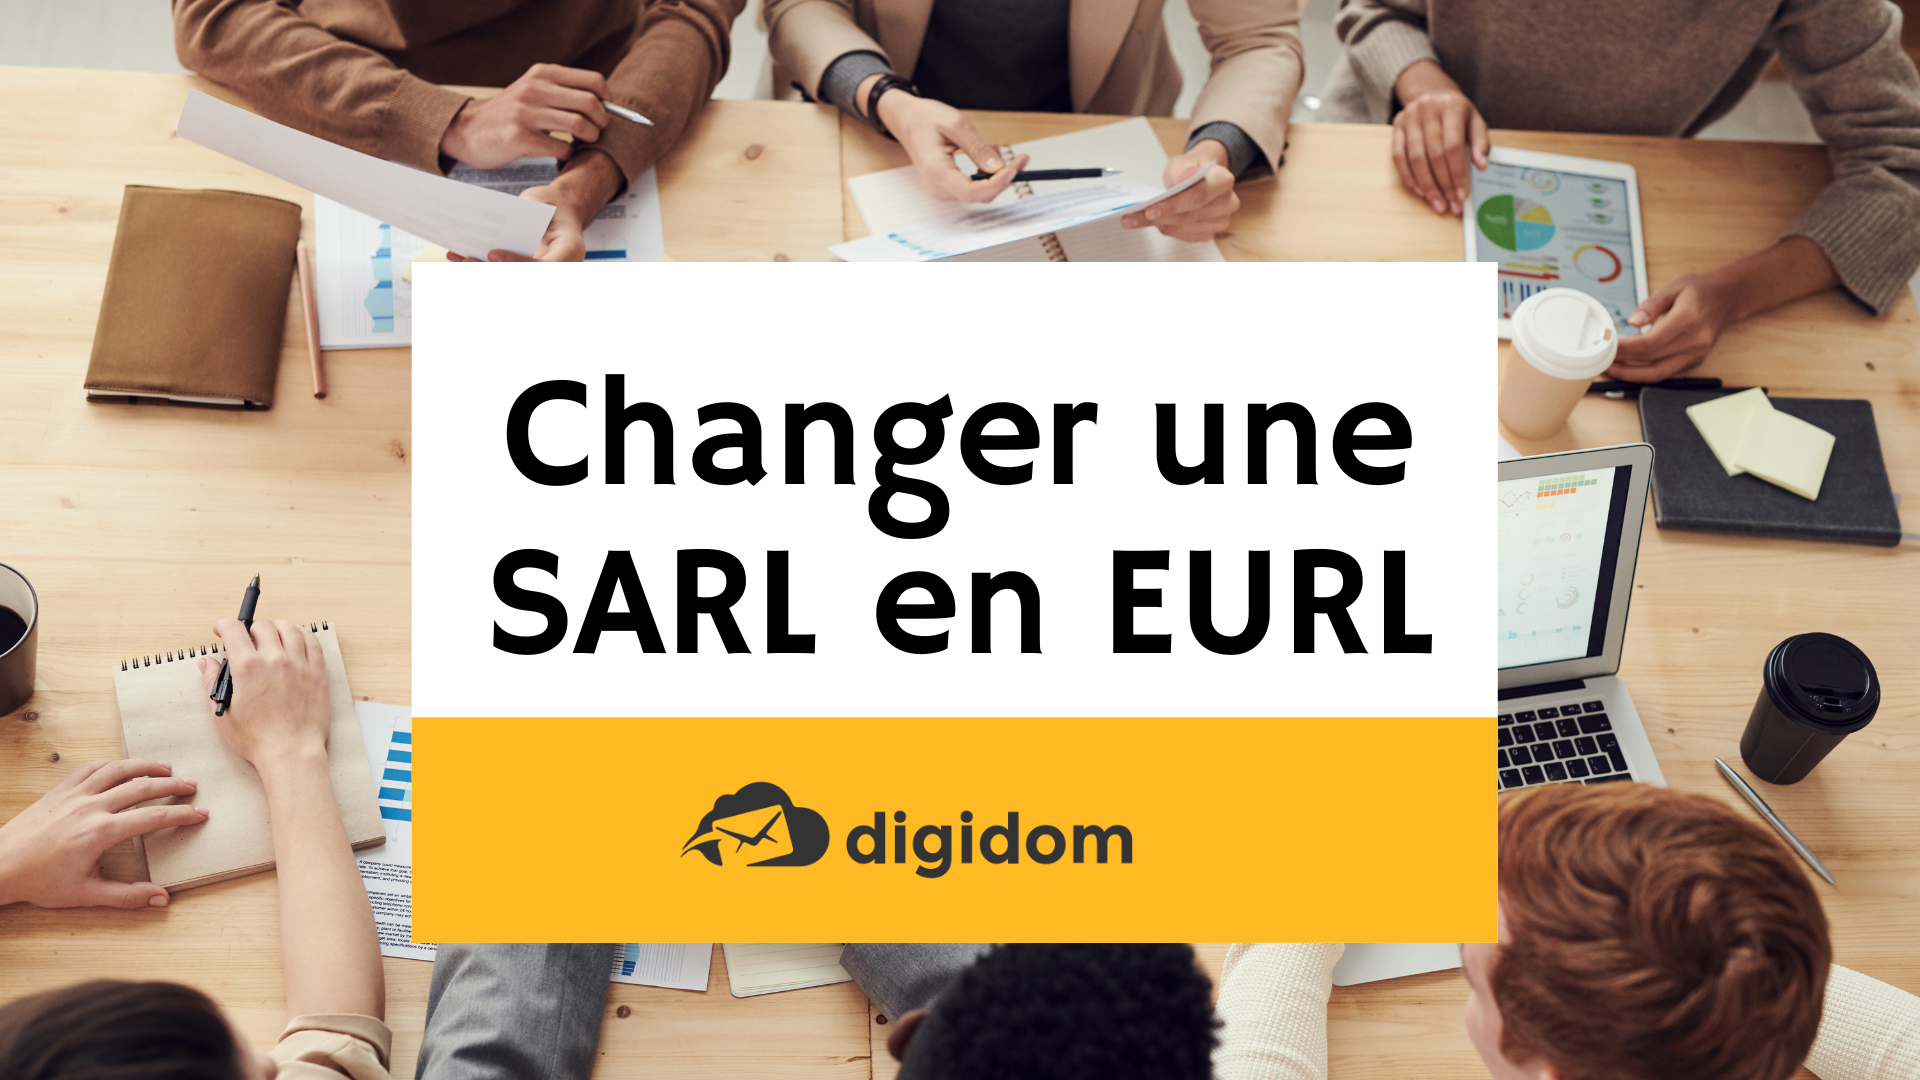 Changer une SARL en EURL